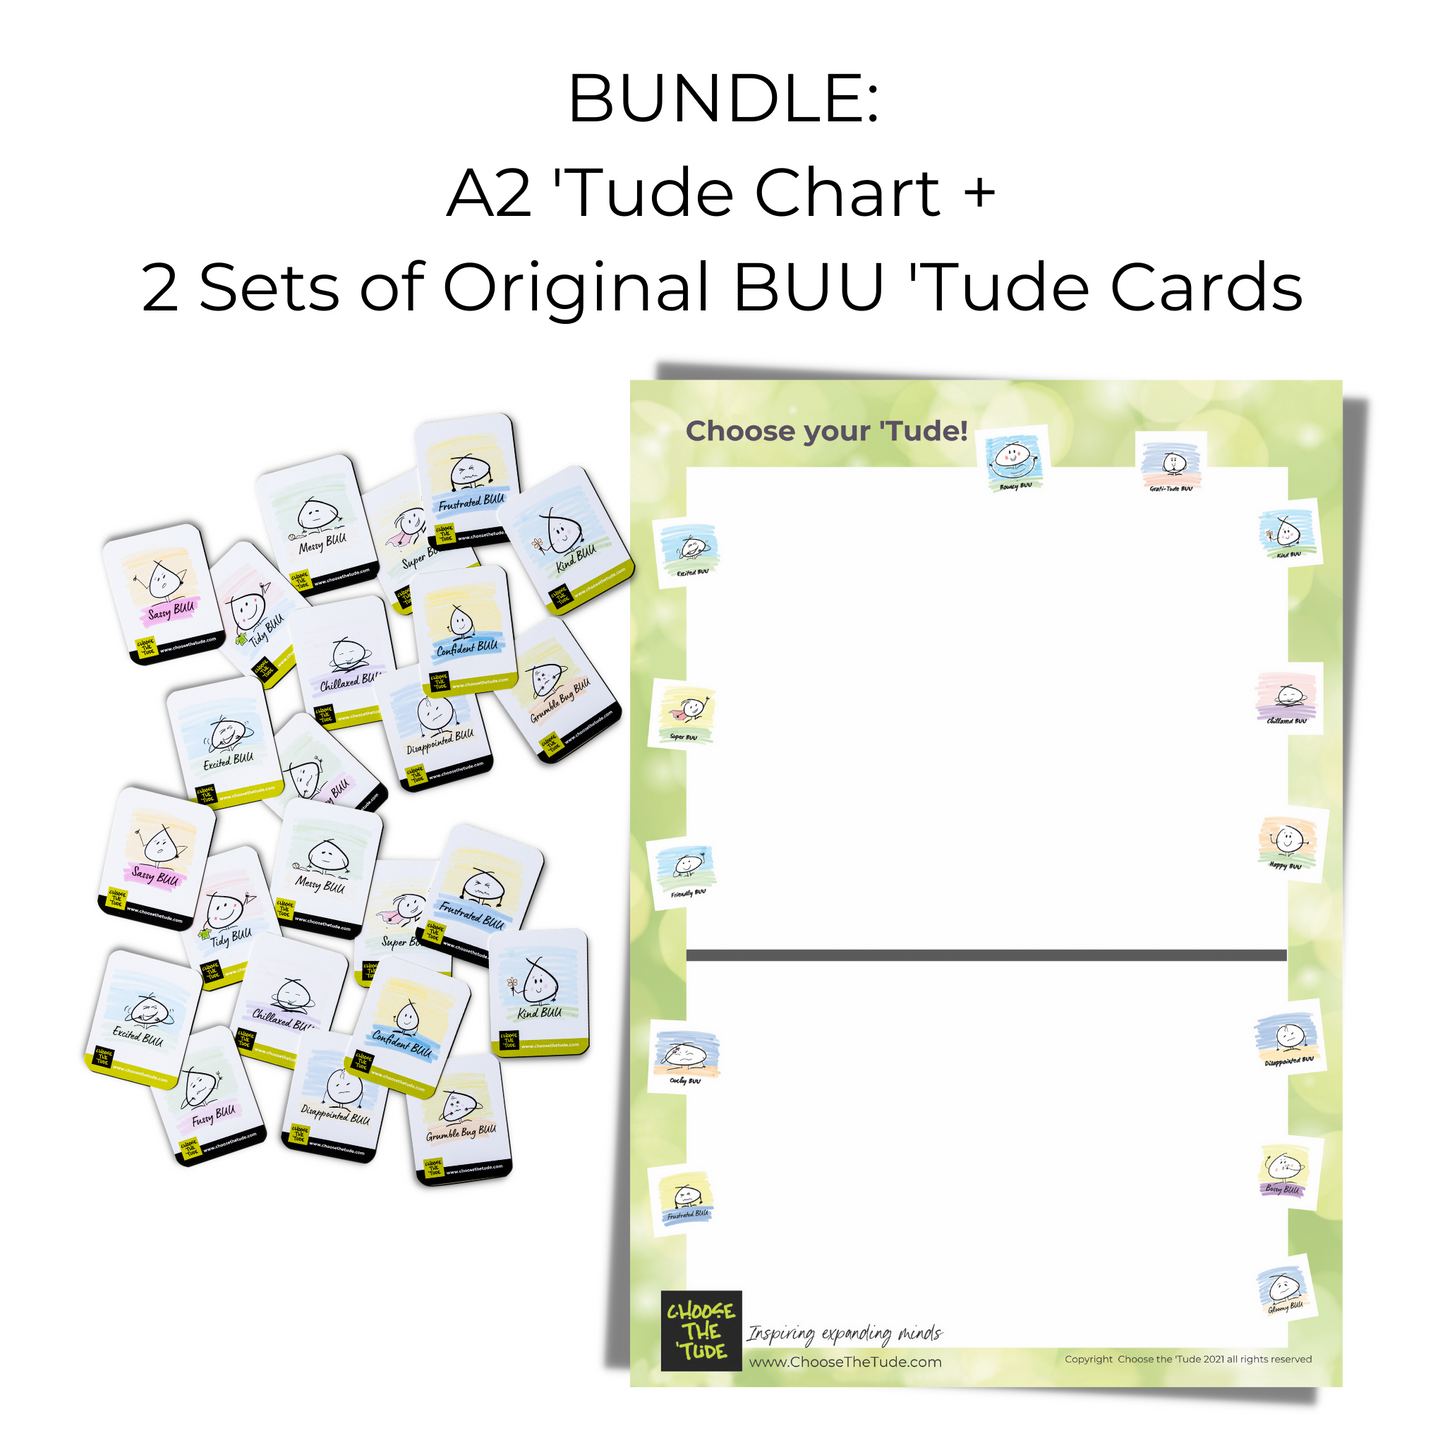 Bundle: A2 'Tude Chart + Original BUU 'Tude Cards